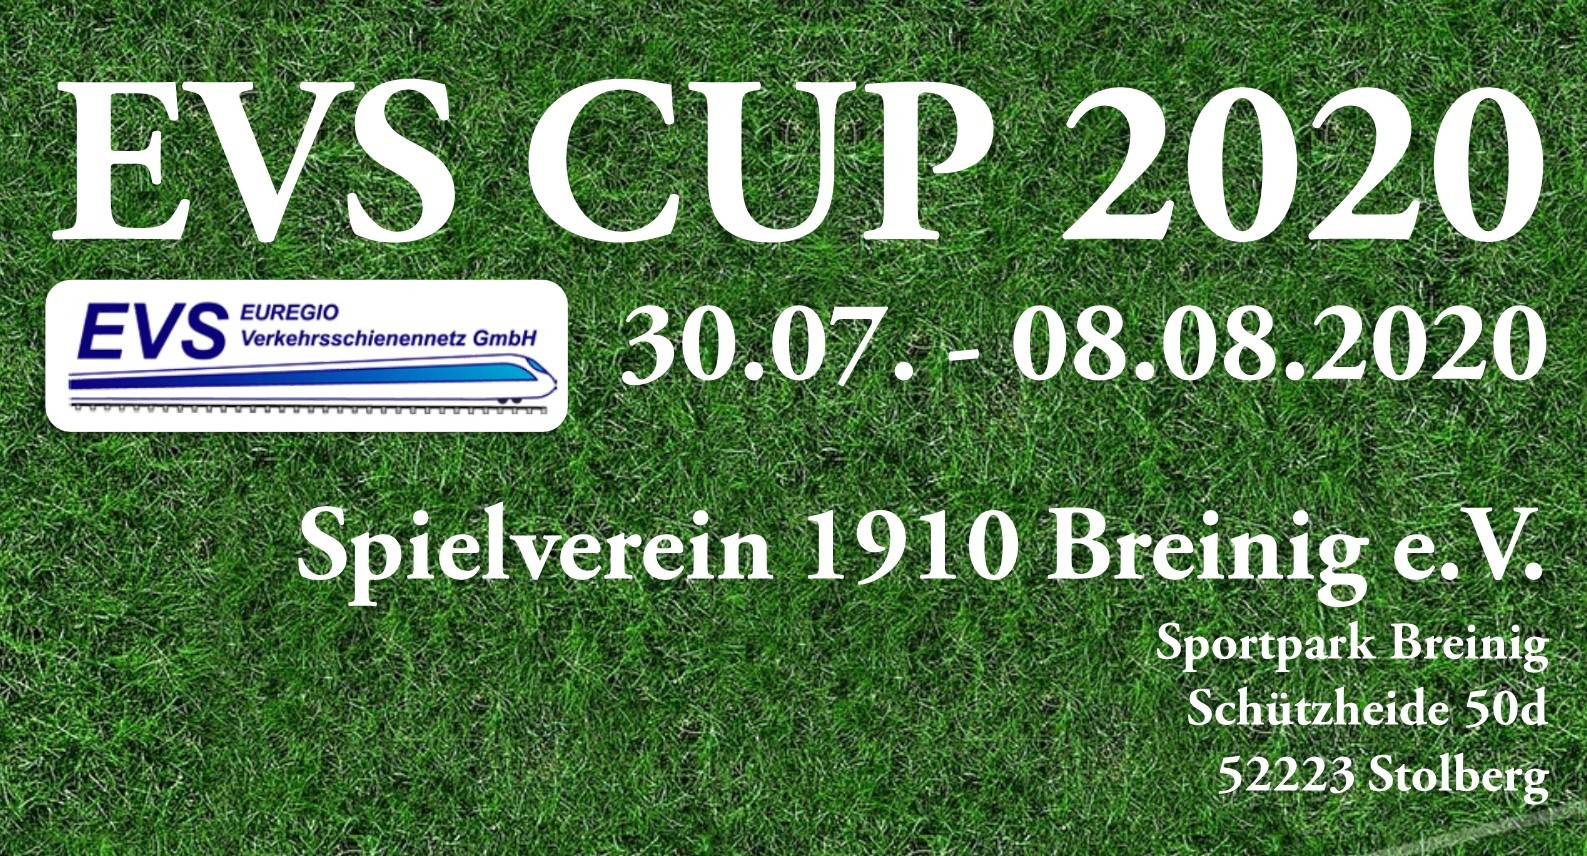 EVS CUP 2020